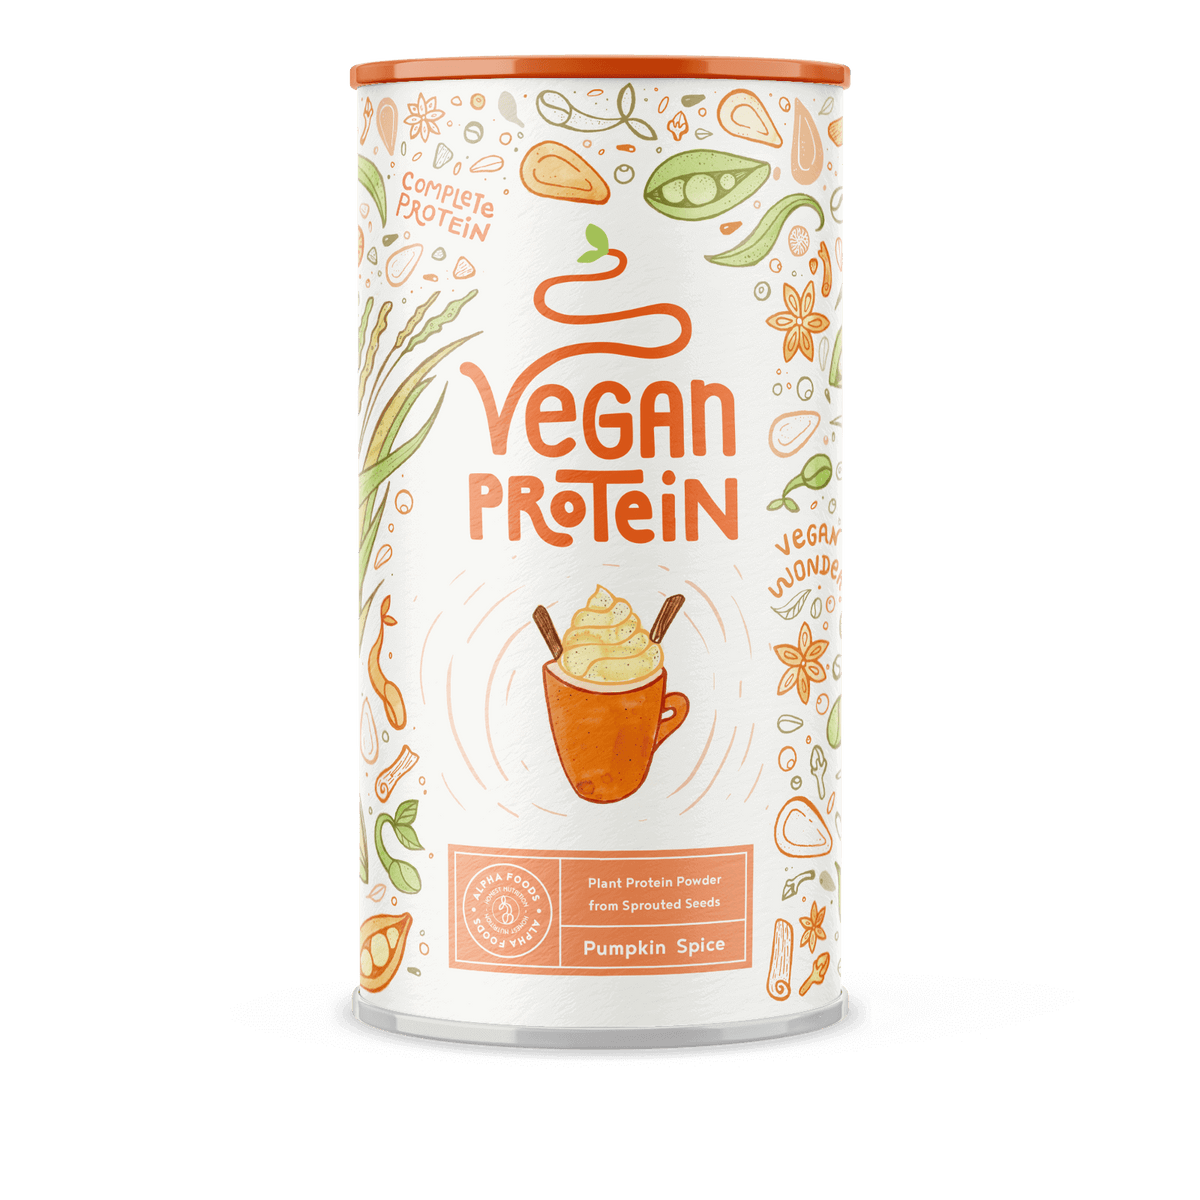 Vegan Protein - Pumpkin Spice Flavour